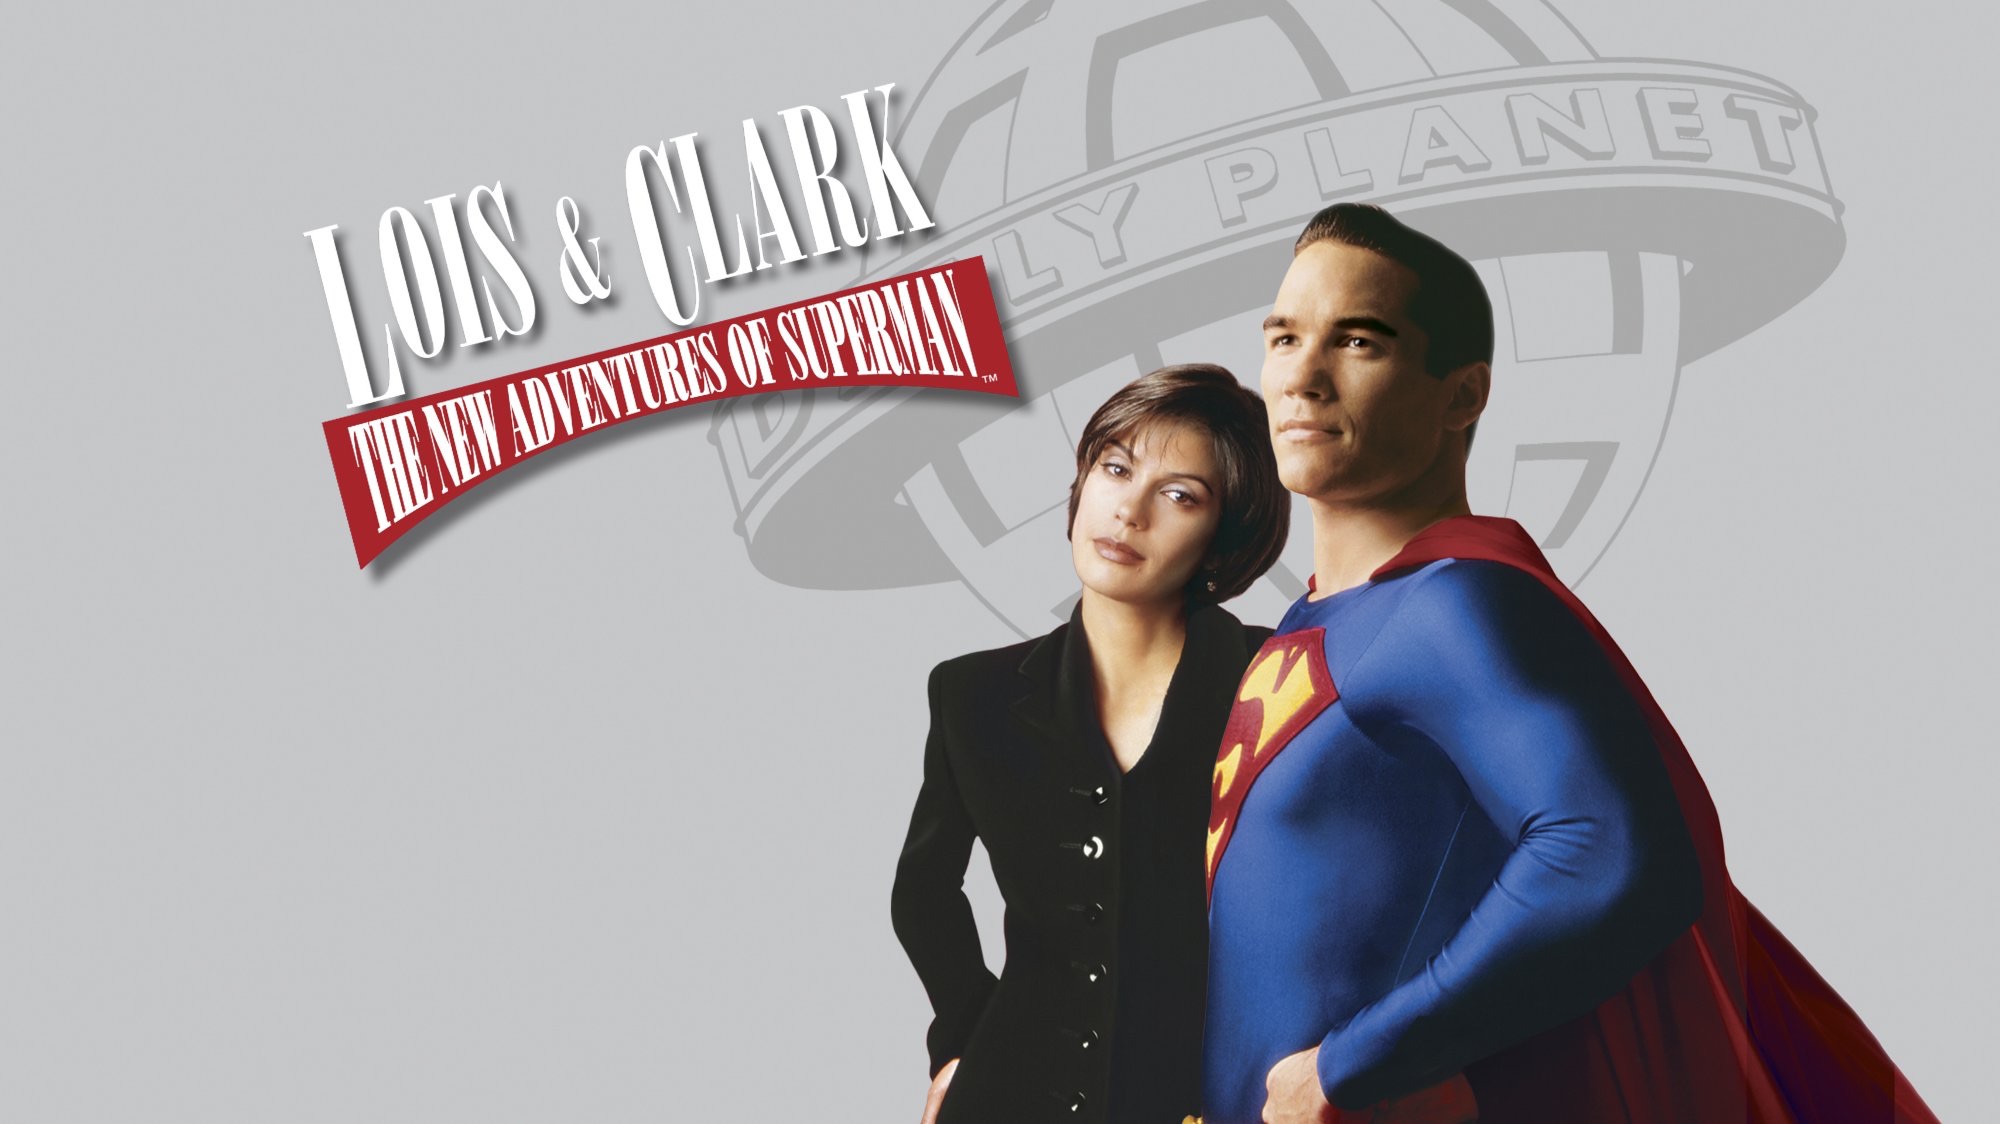 500231 Обои и Лоис И Кларк: Новые Приключения Супермена картинки на рабочий стол. Скачать  заставки на ПК бесплатно